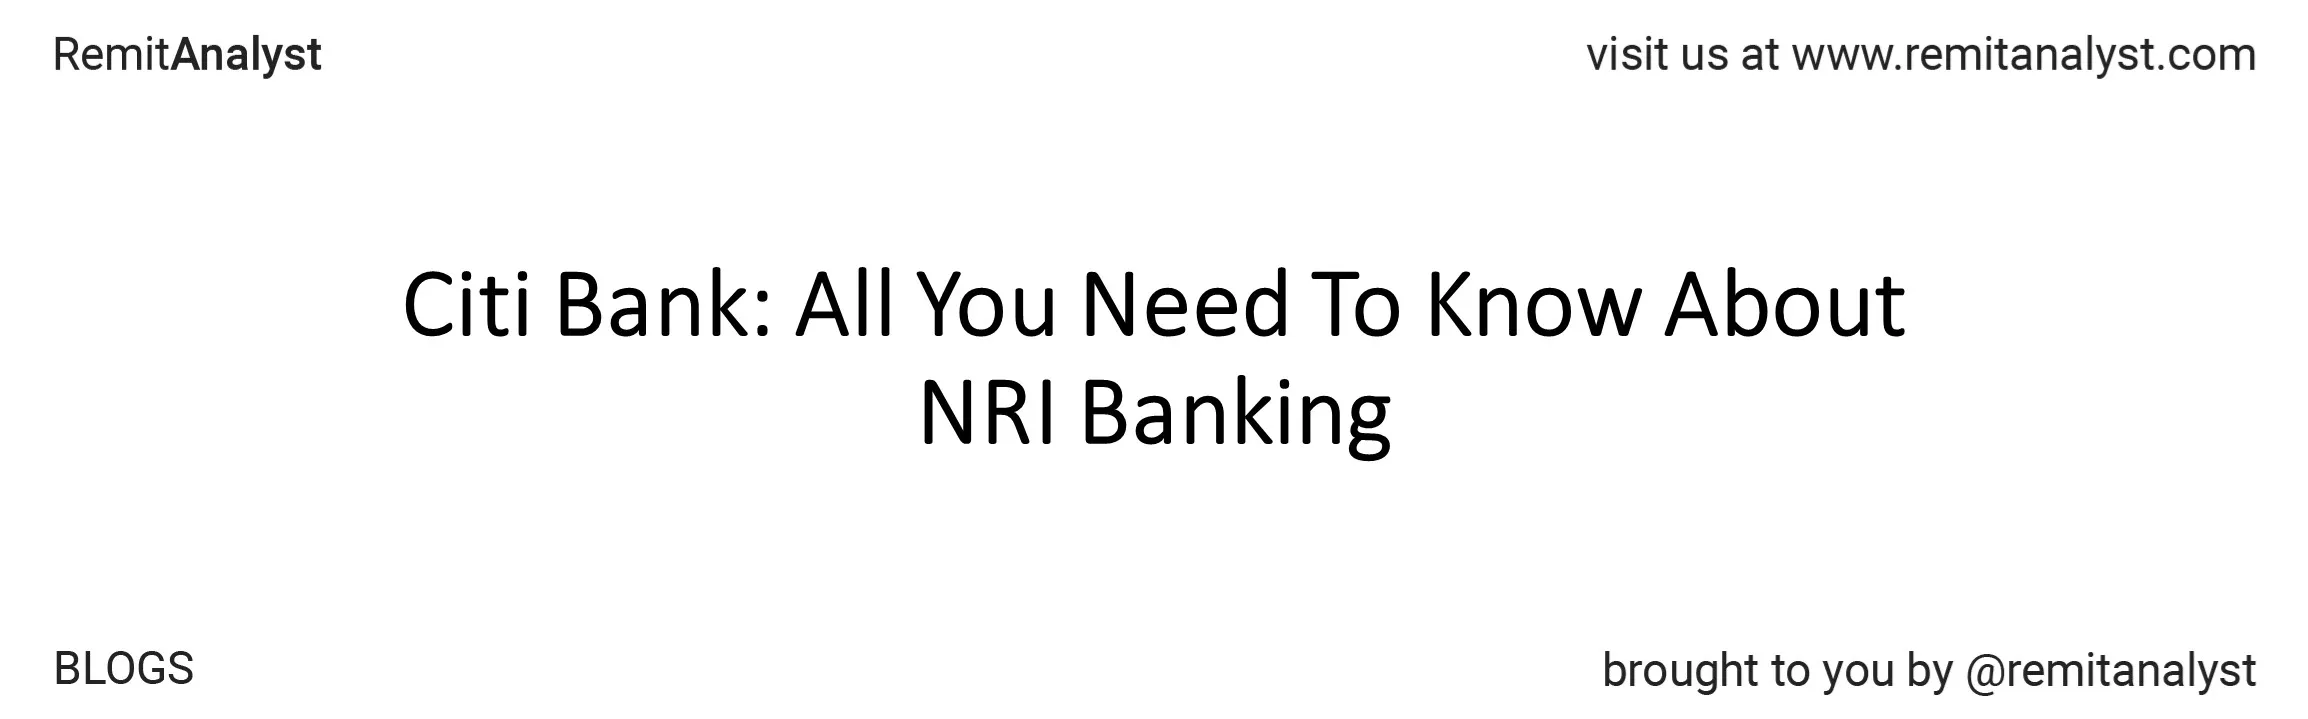 citi-bank-nri-services-title